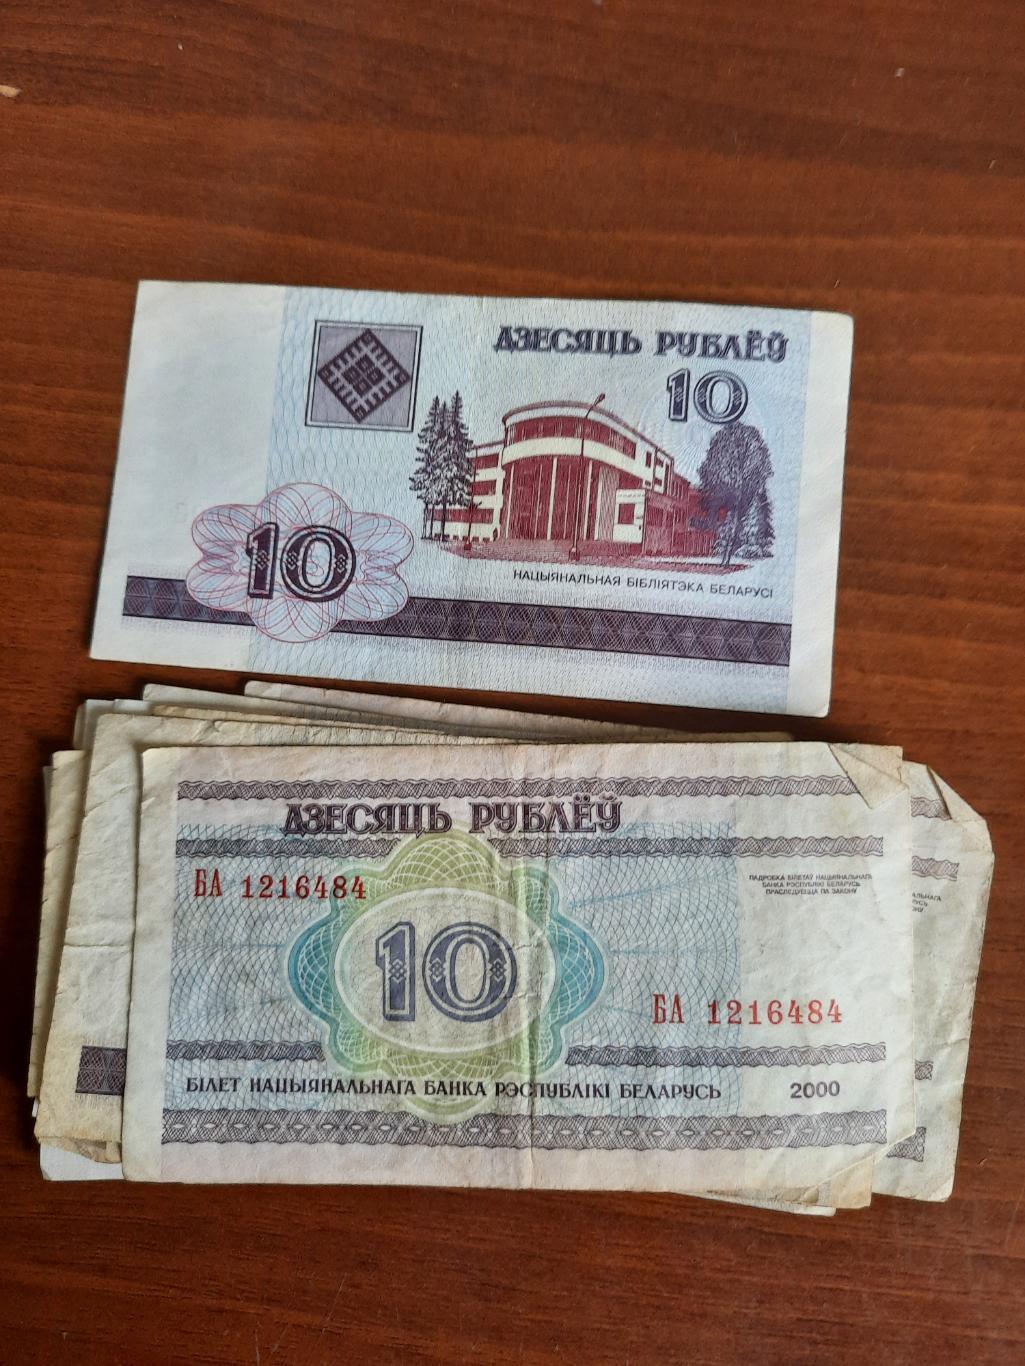 Беларусь. 10 рублей 2000 год (одна купюра) серия бз